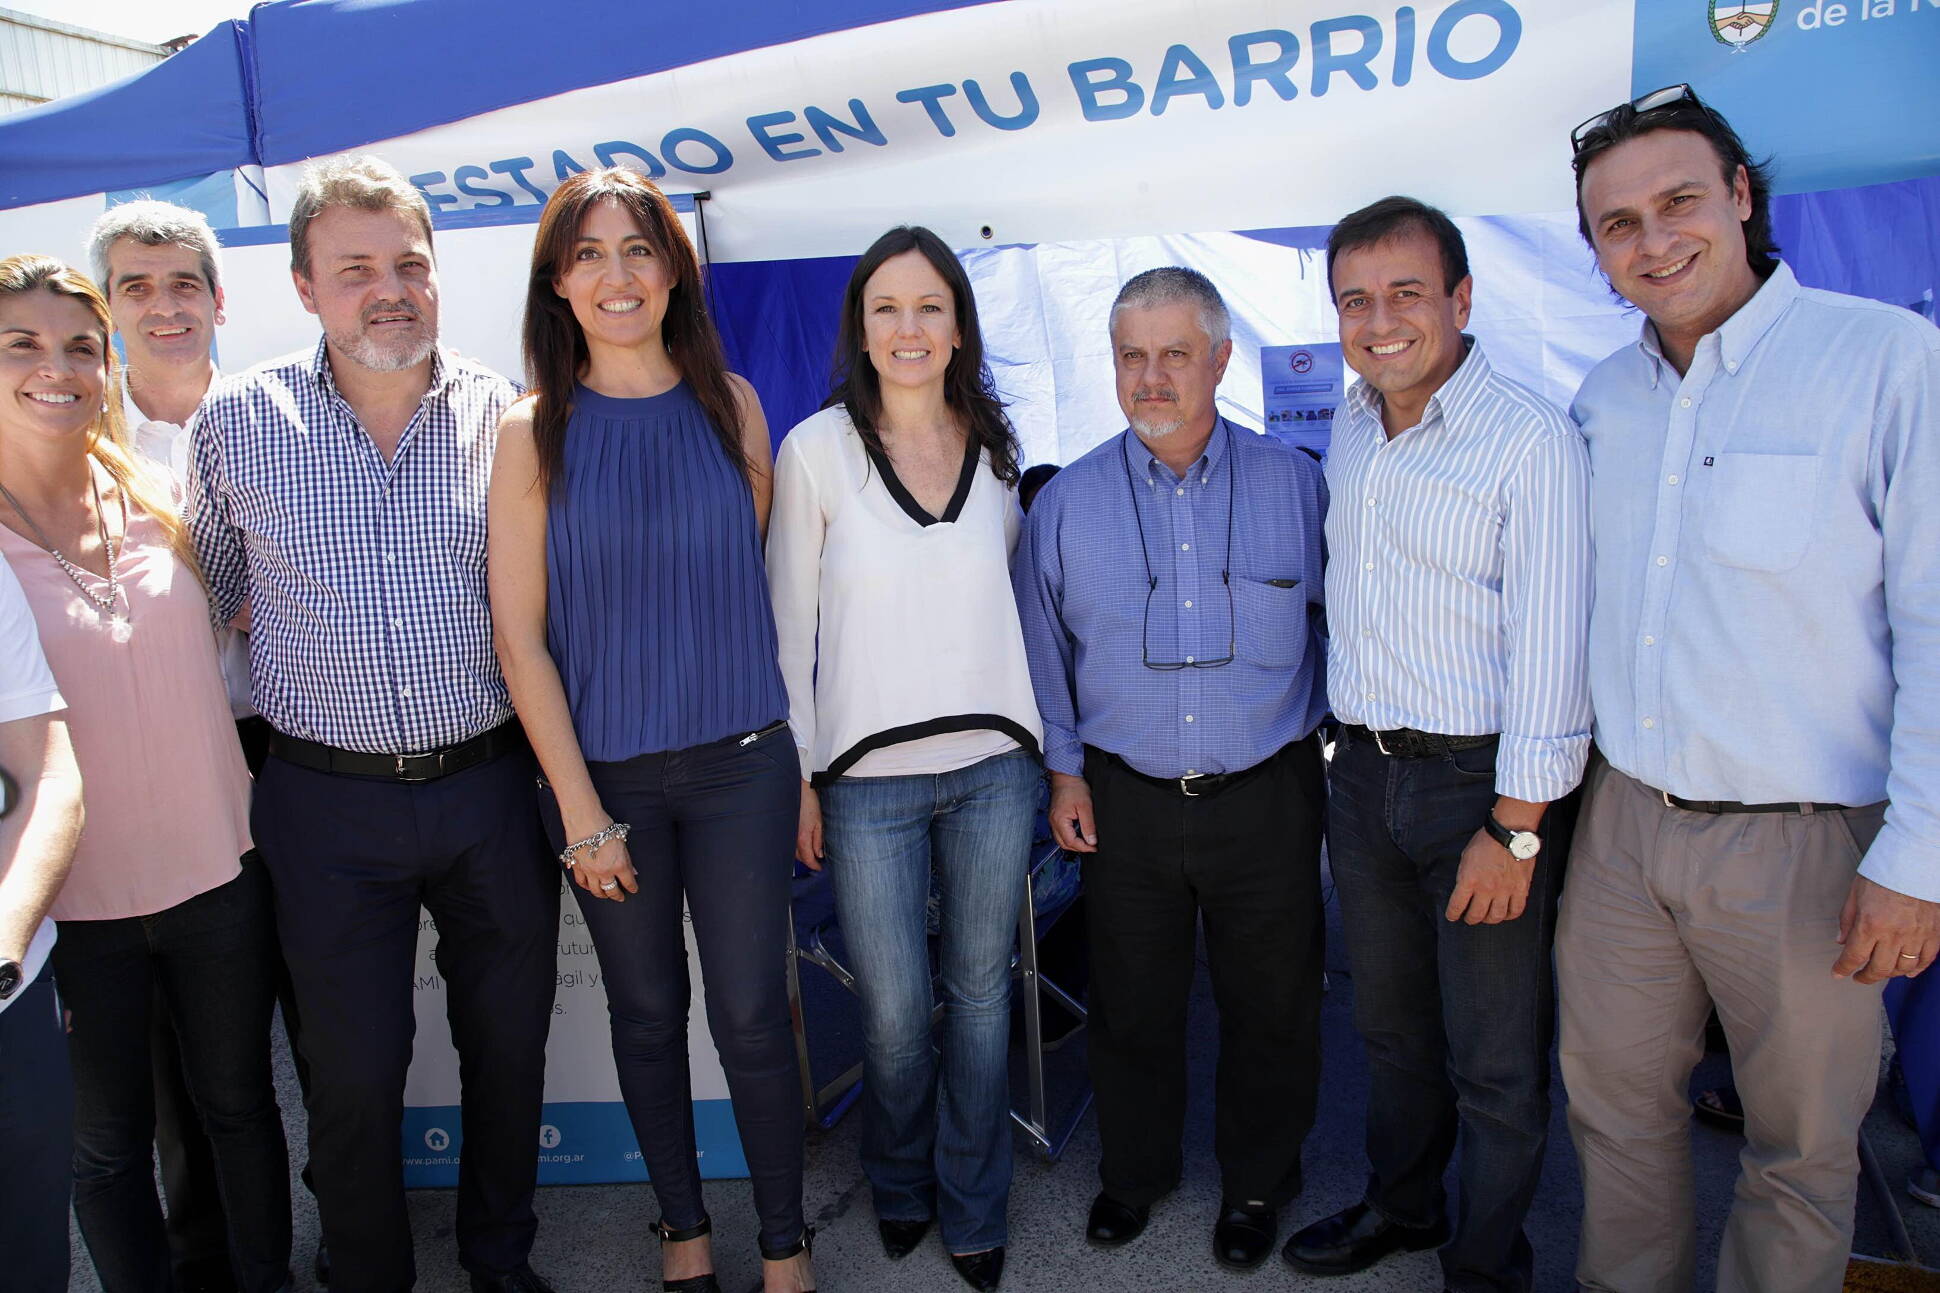 La ministro Stanley participó del programa “El Estado en Tu Barrio” en Rosario